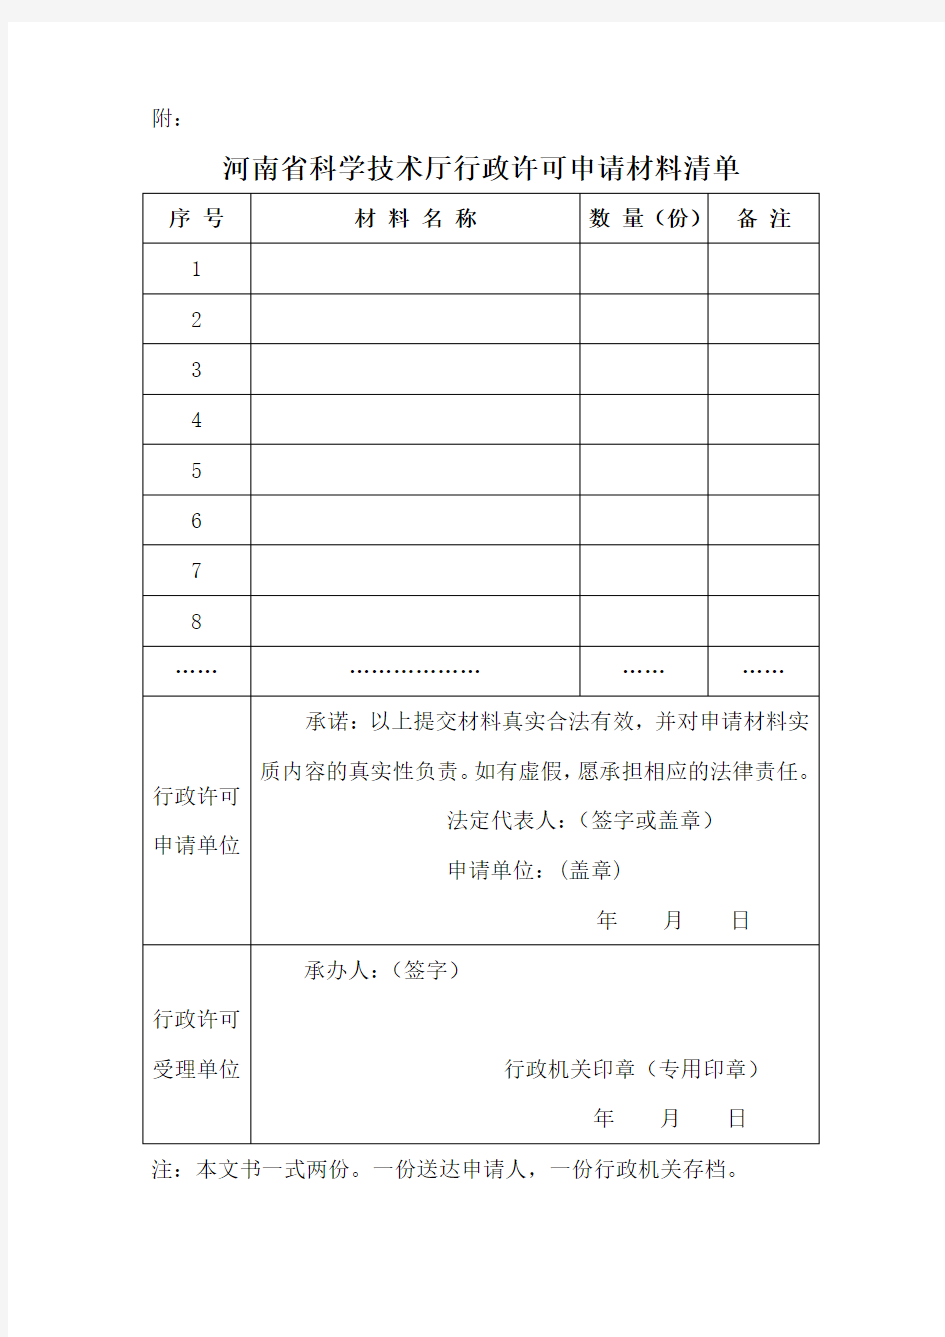 河南省科学技术厅行政许可申请书(附材料清单)